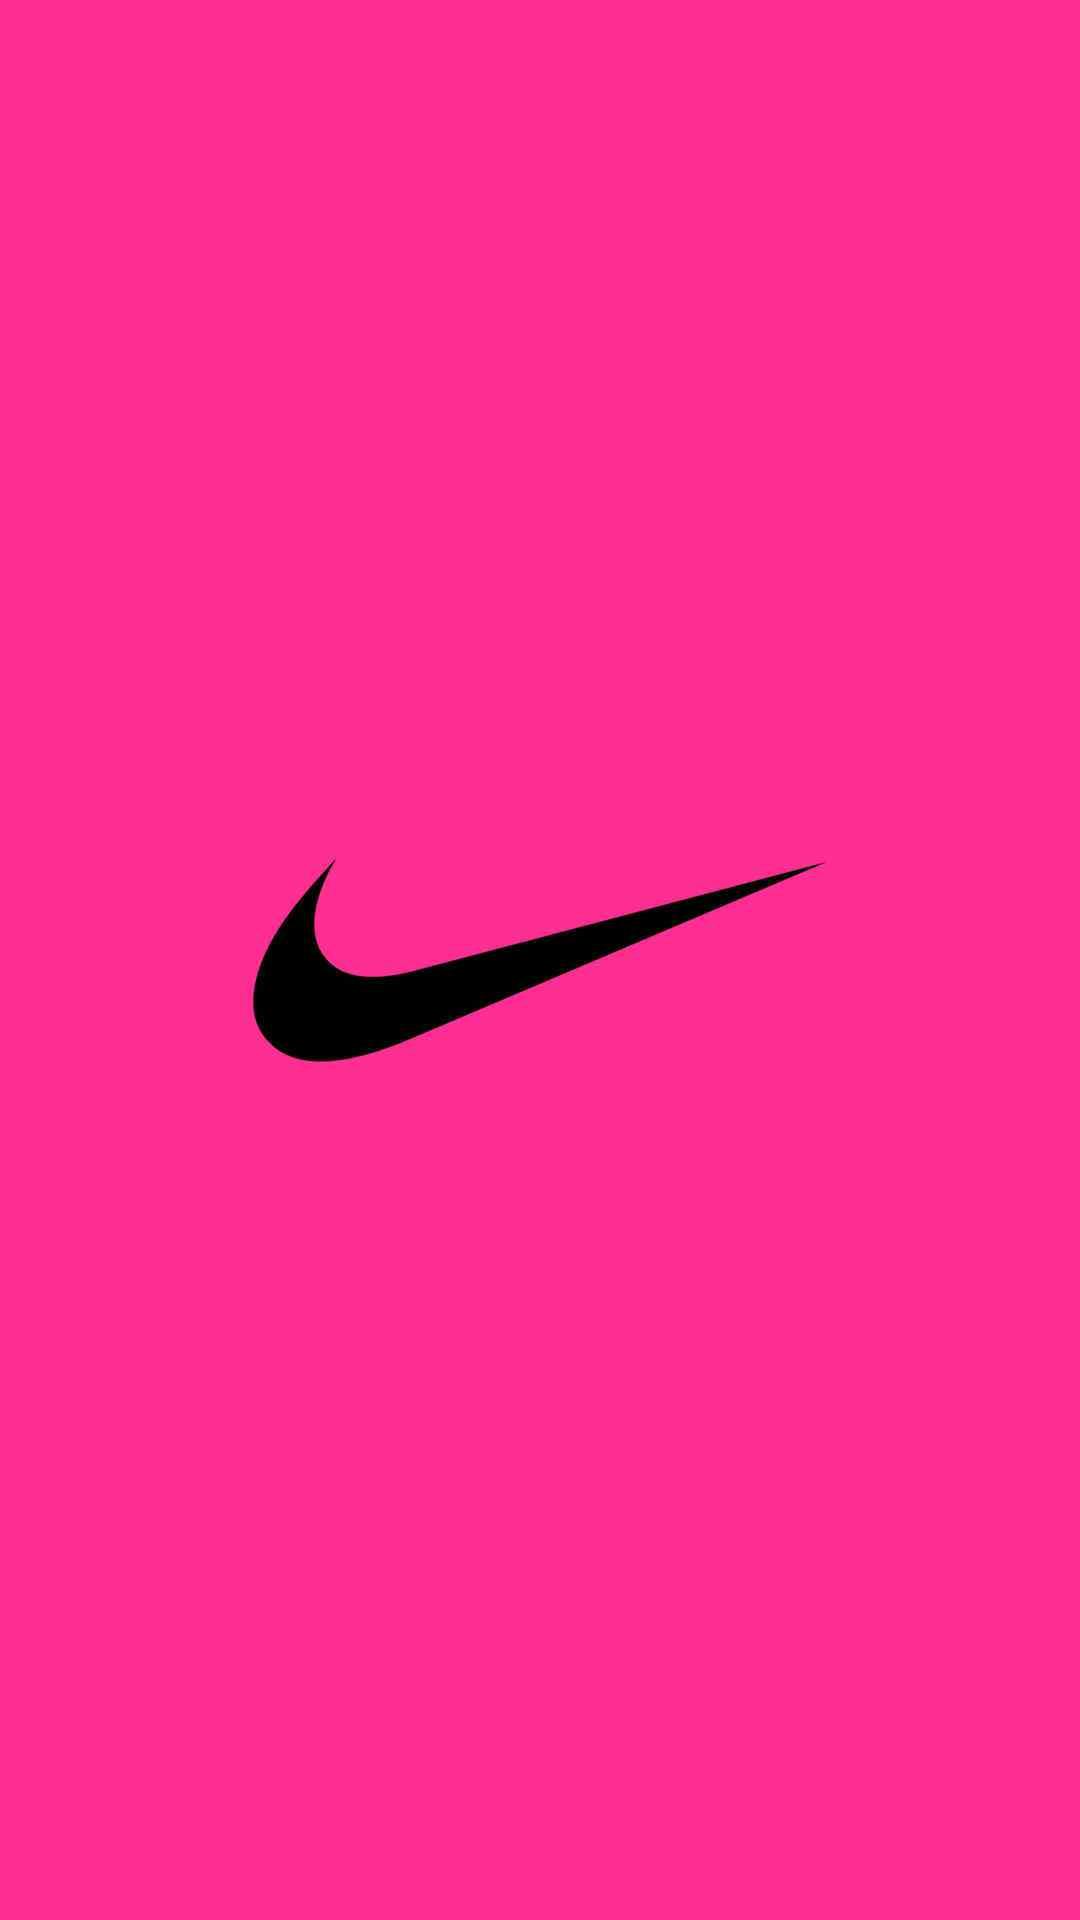 1080 x 1920 · jpeg - [71+] Pink Nike Wallpaper on WallpaperSafari